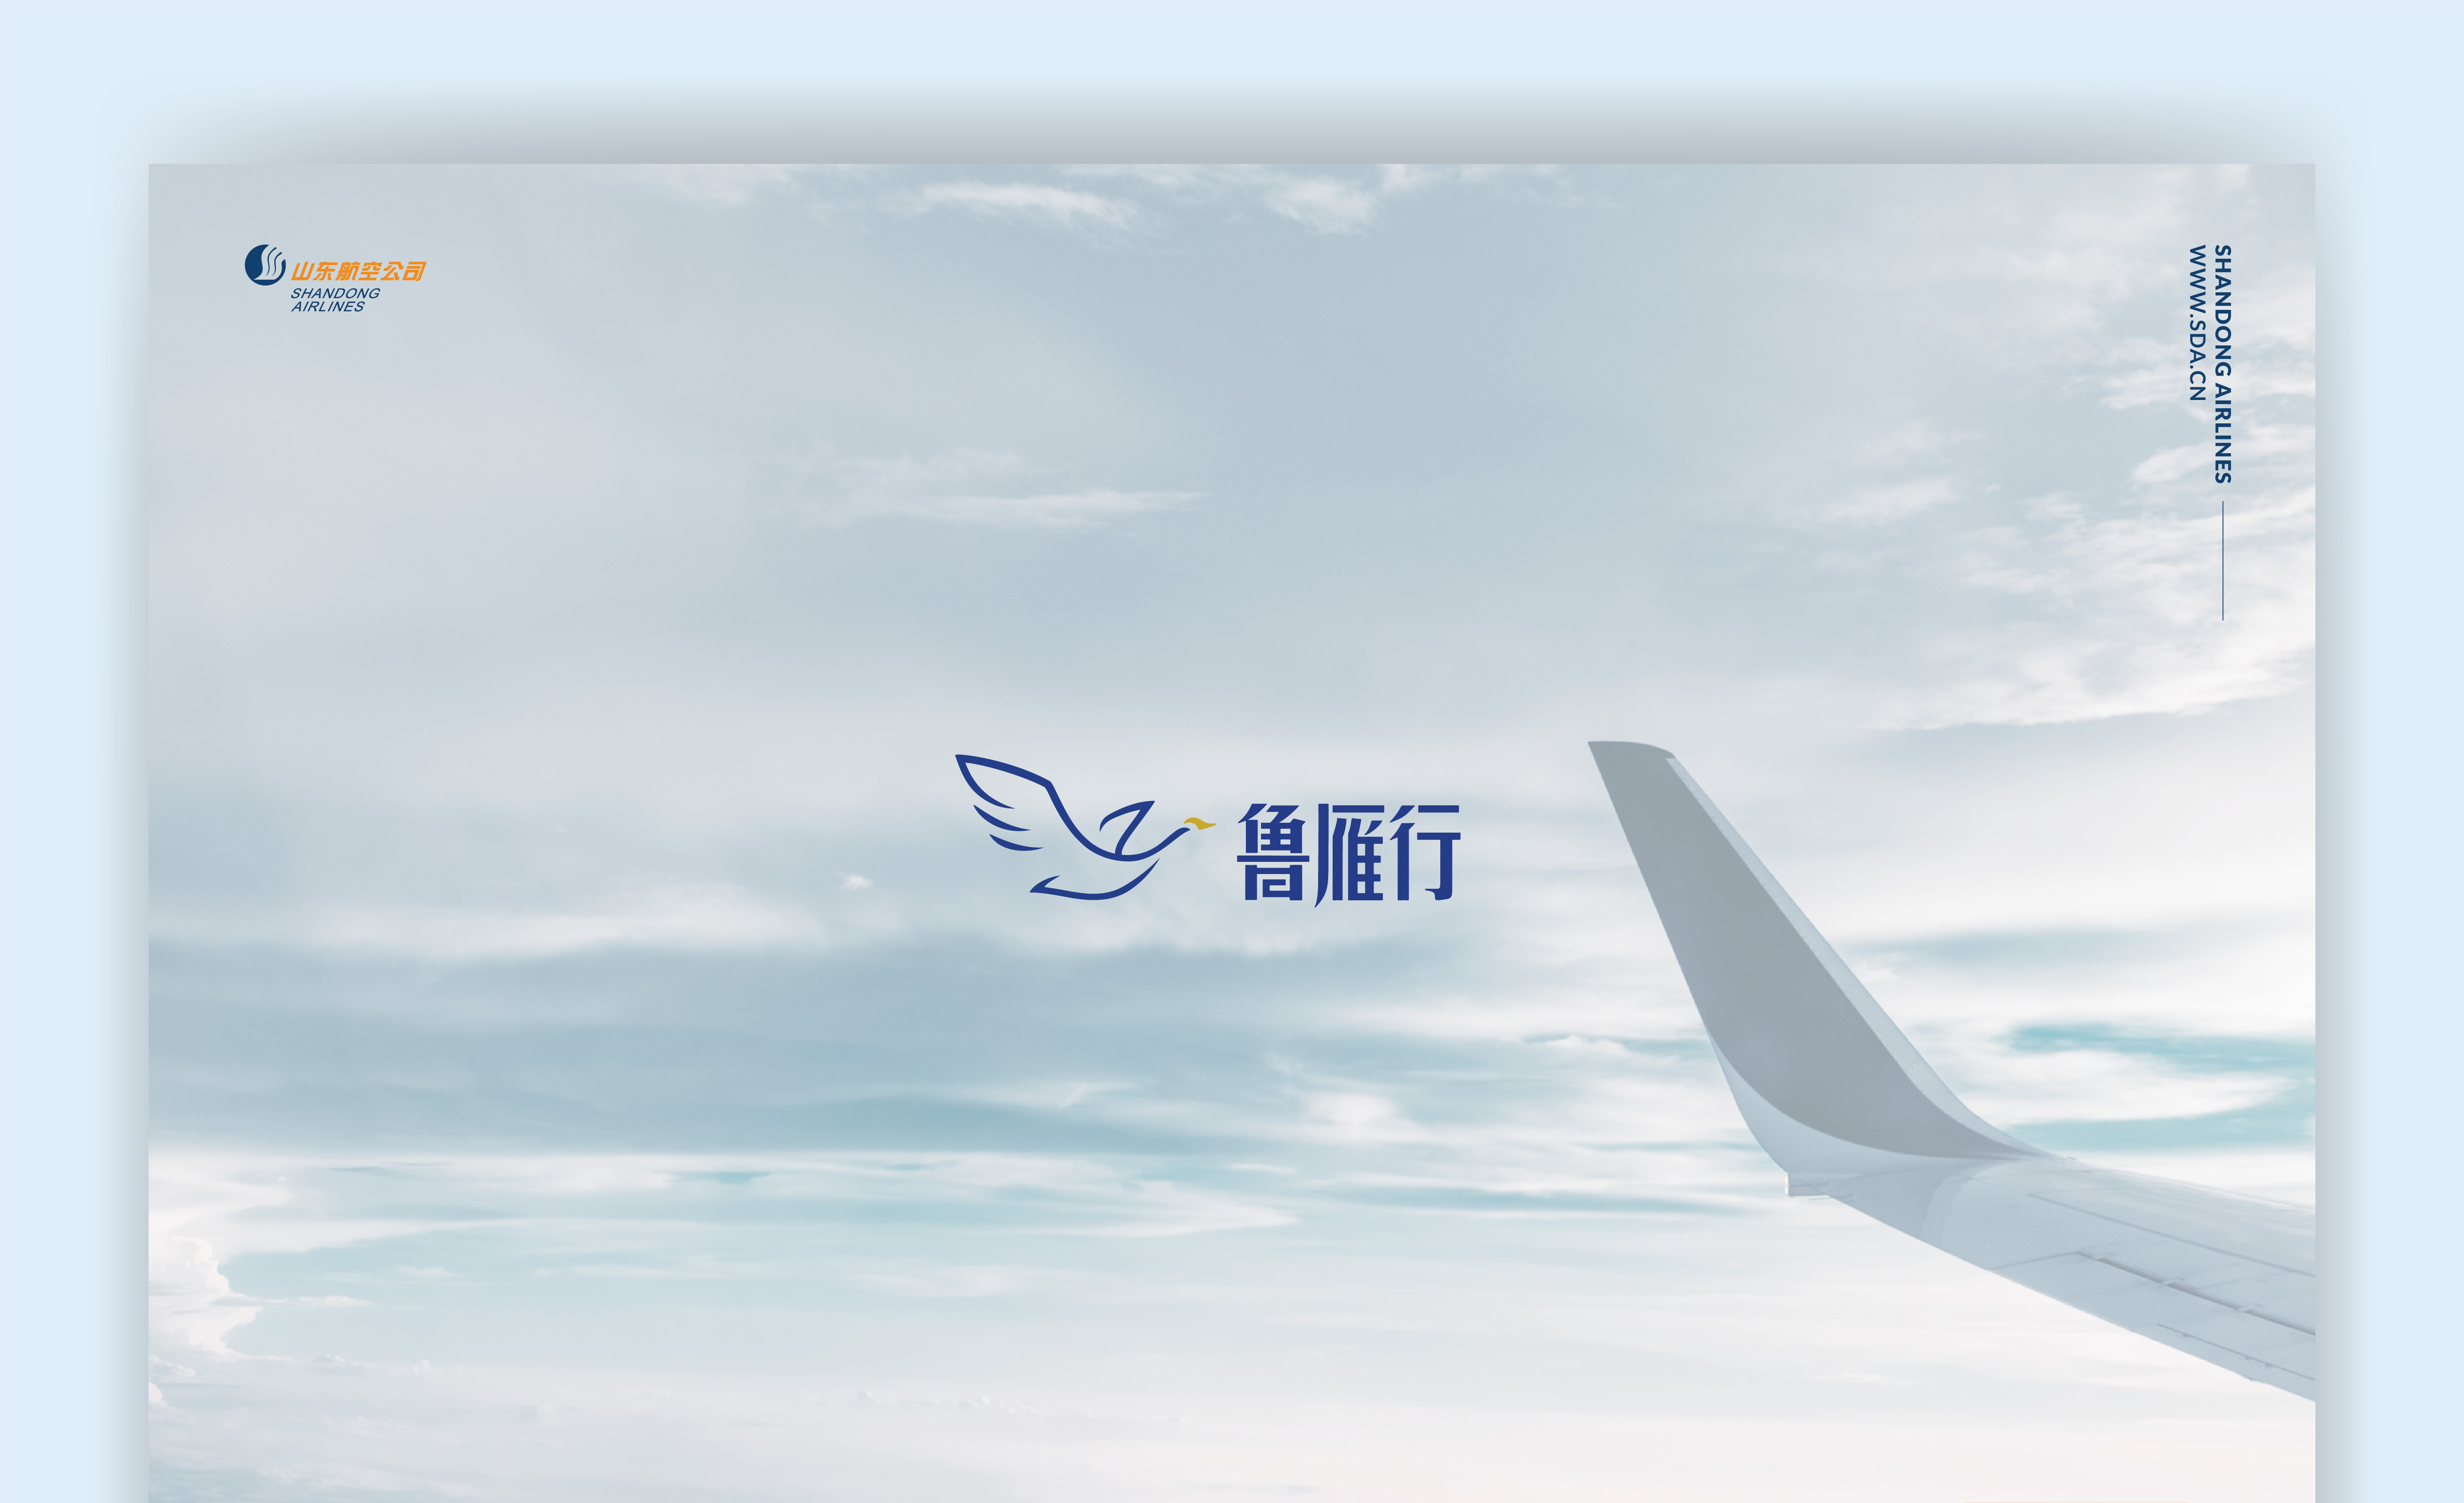 鲁雁行_logo-01.jpg